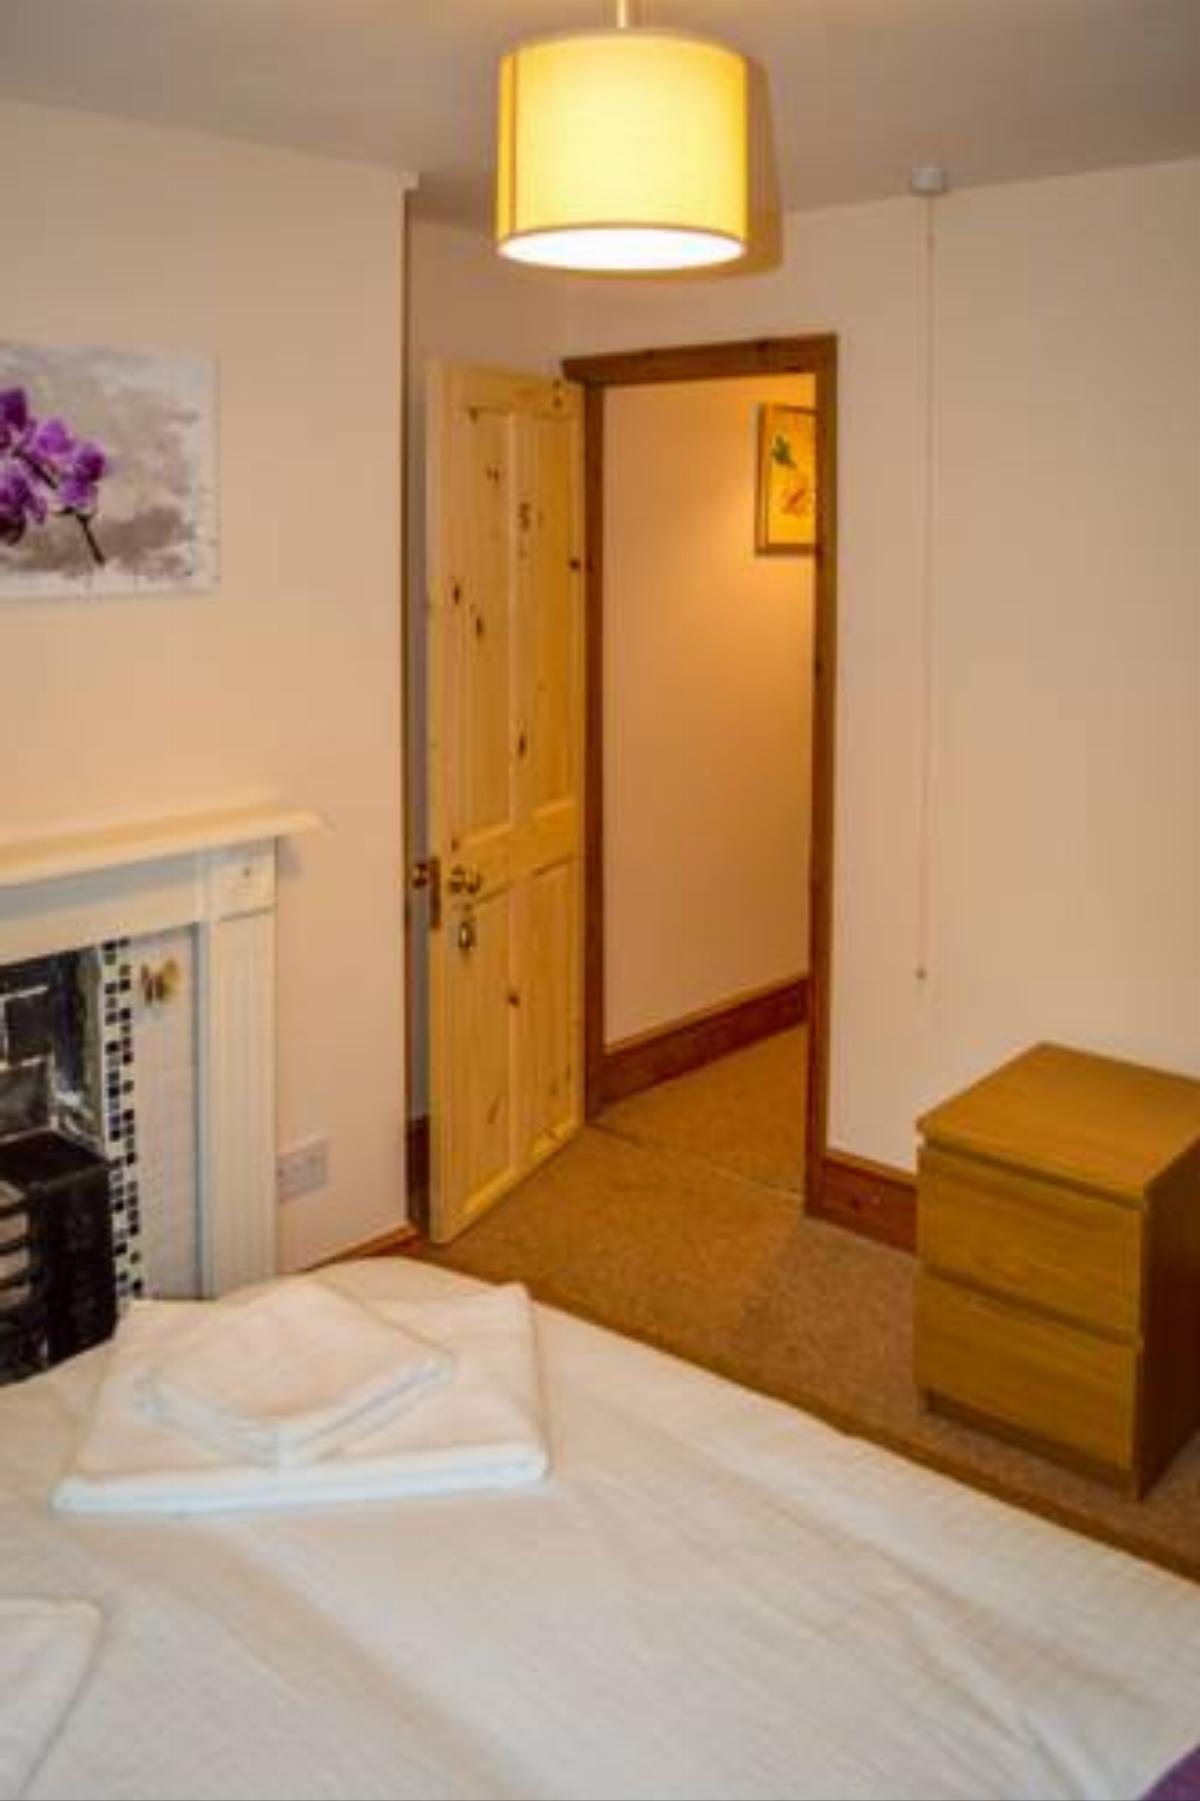 Prospect Lodge Serviced Accommodation Hotel Banbury United Kingdom